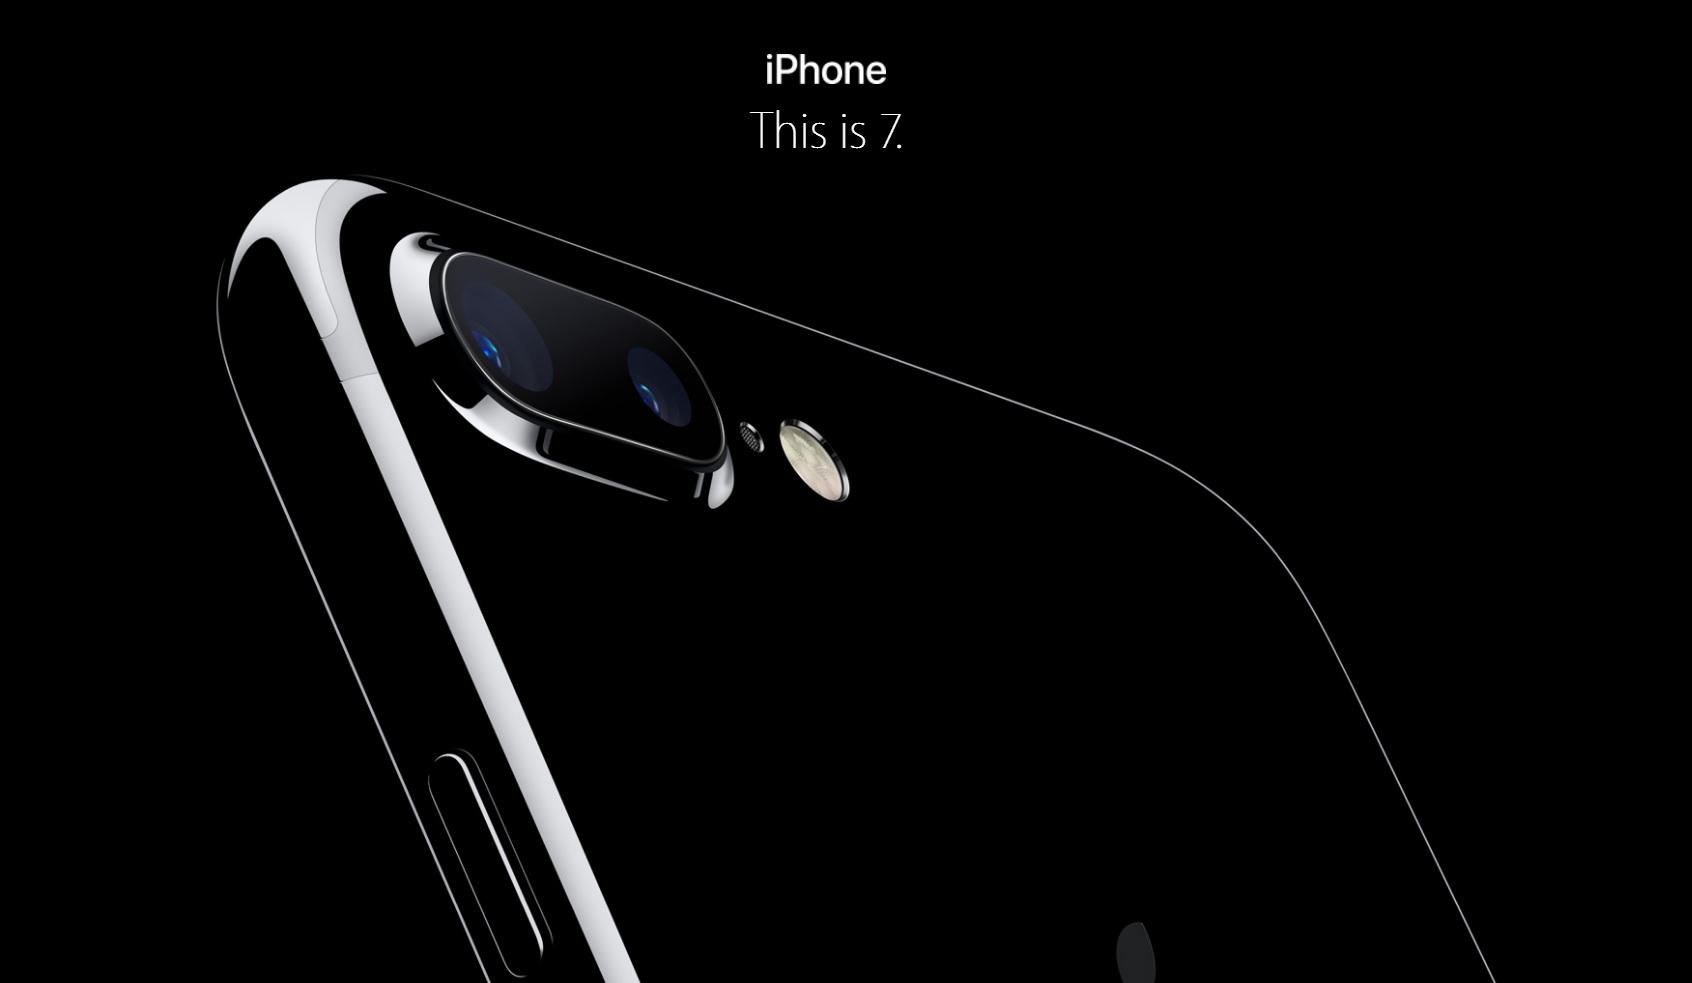 Apple har endelig avslørt iPhone 7. Den er kjappere, kommer i to nye farger, er vanntett og har mye bedre kameraer. Hjemknappen drives nå med vibrering og av programvare.